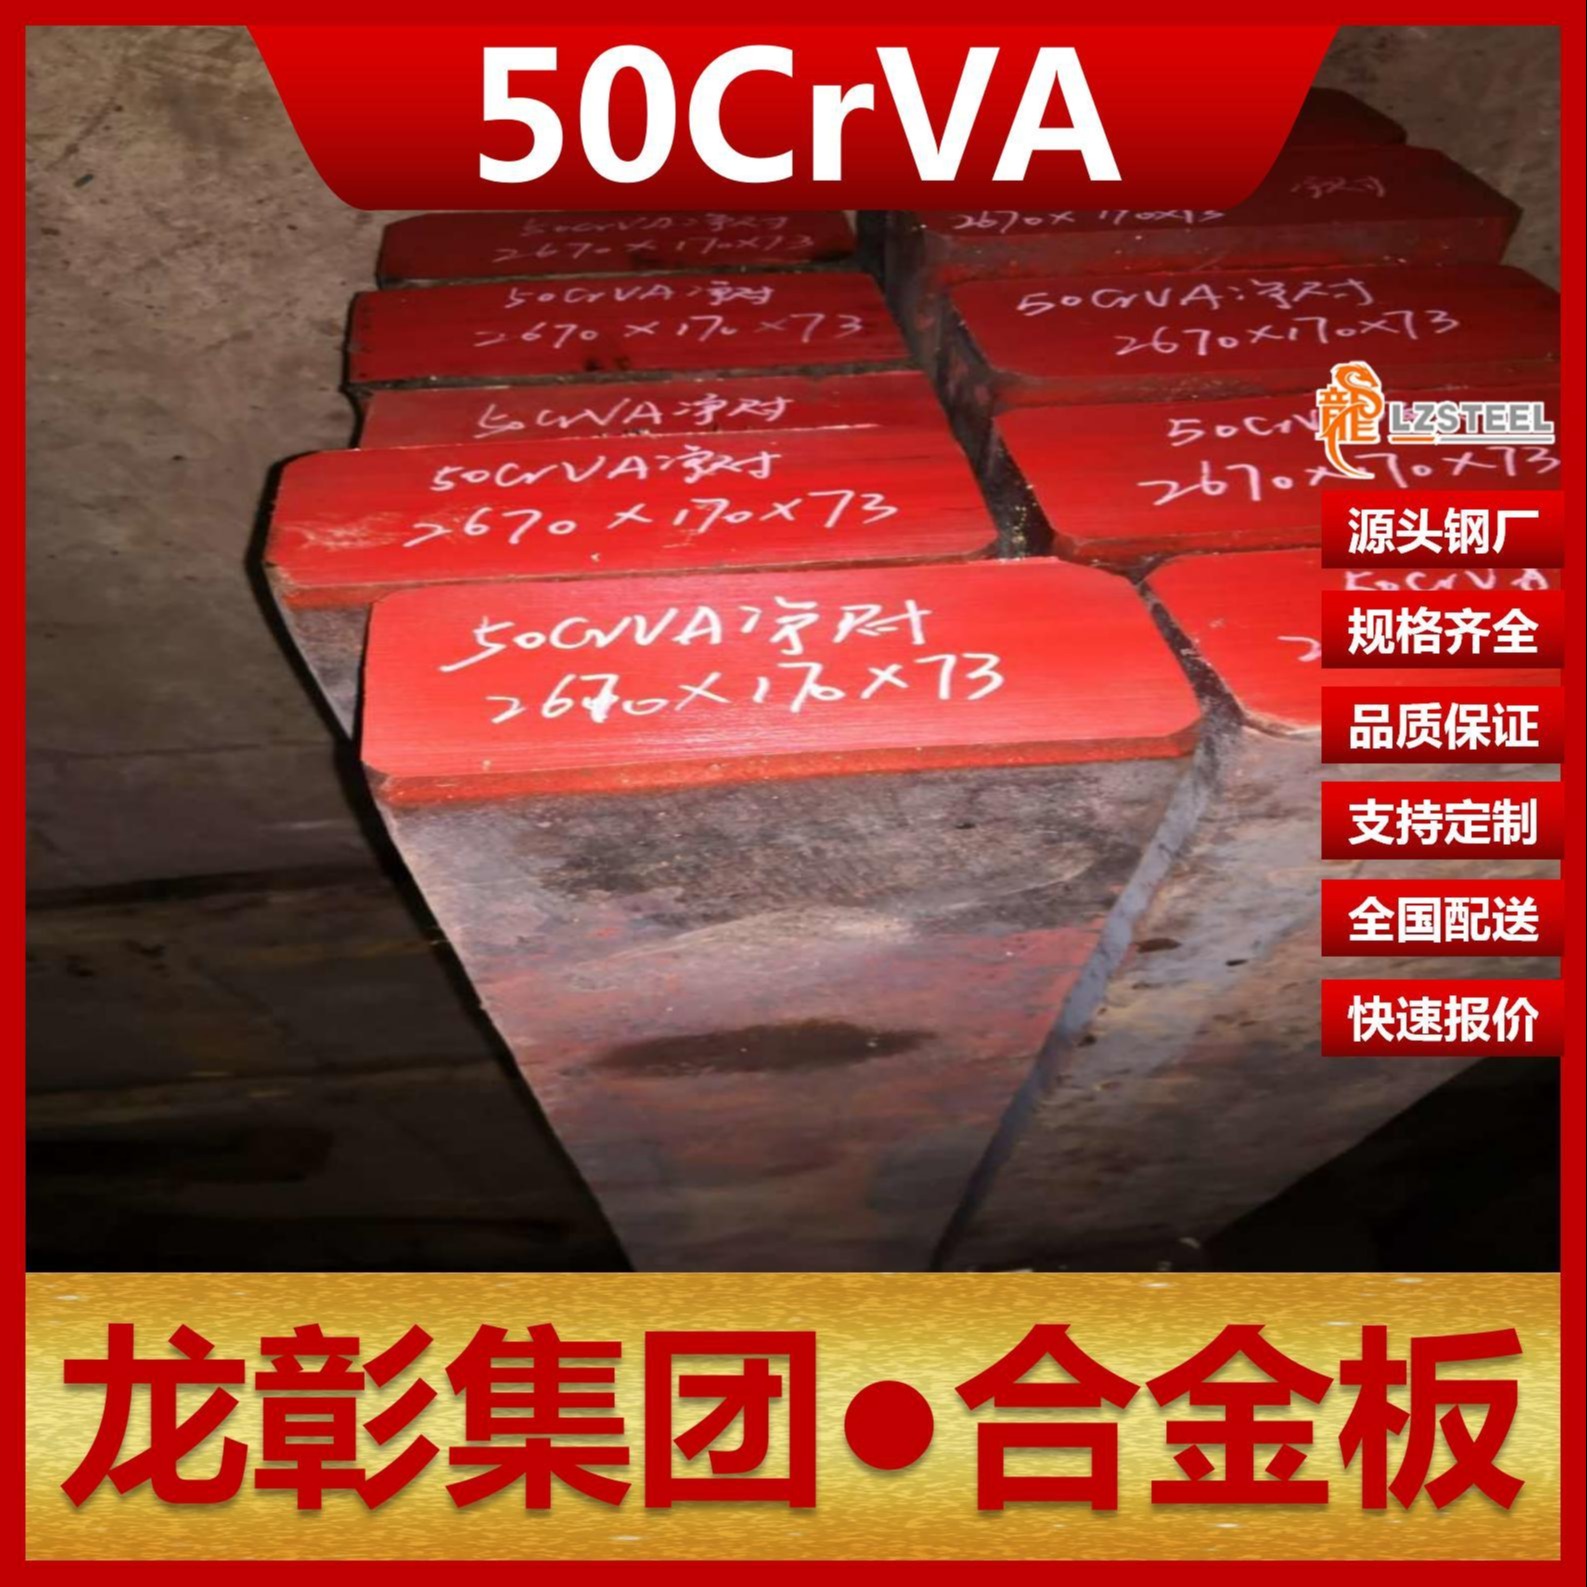 50CrVA钢板现货批零 龙彰集团主营50CrVA合金板卷材可切割图片